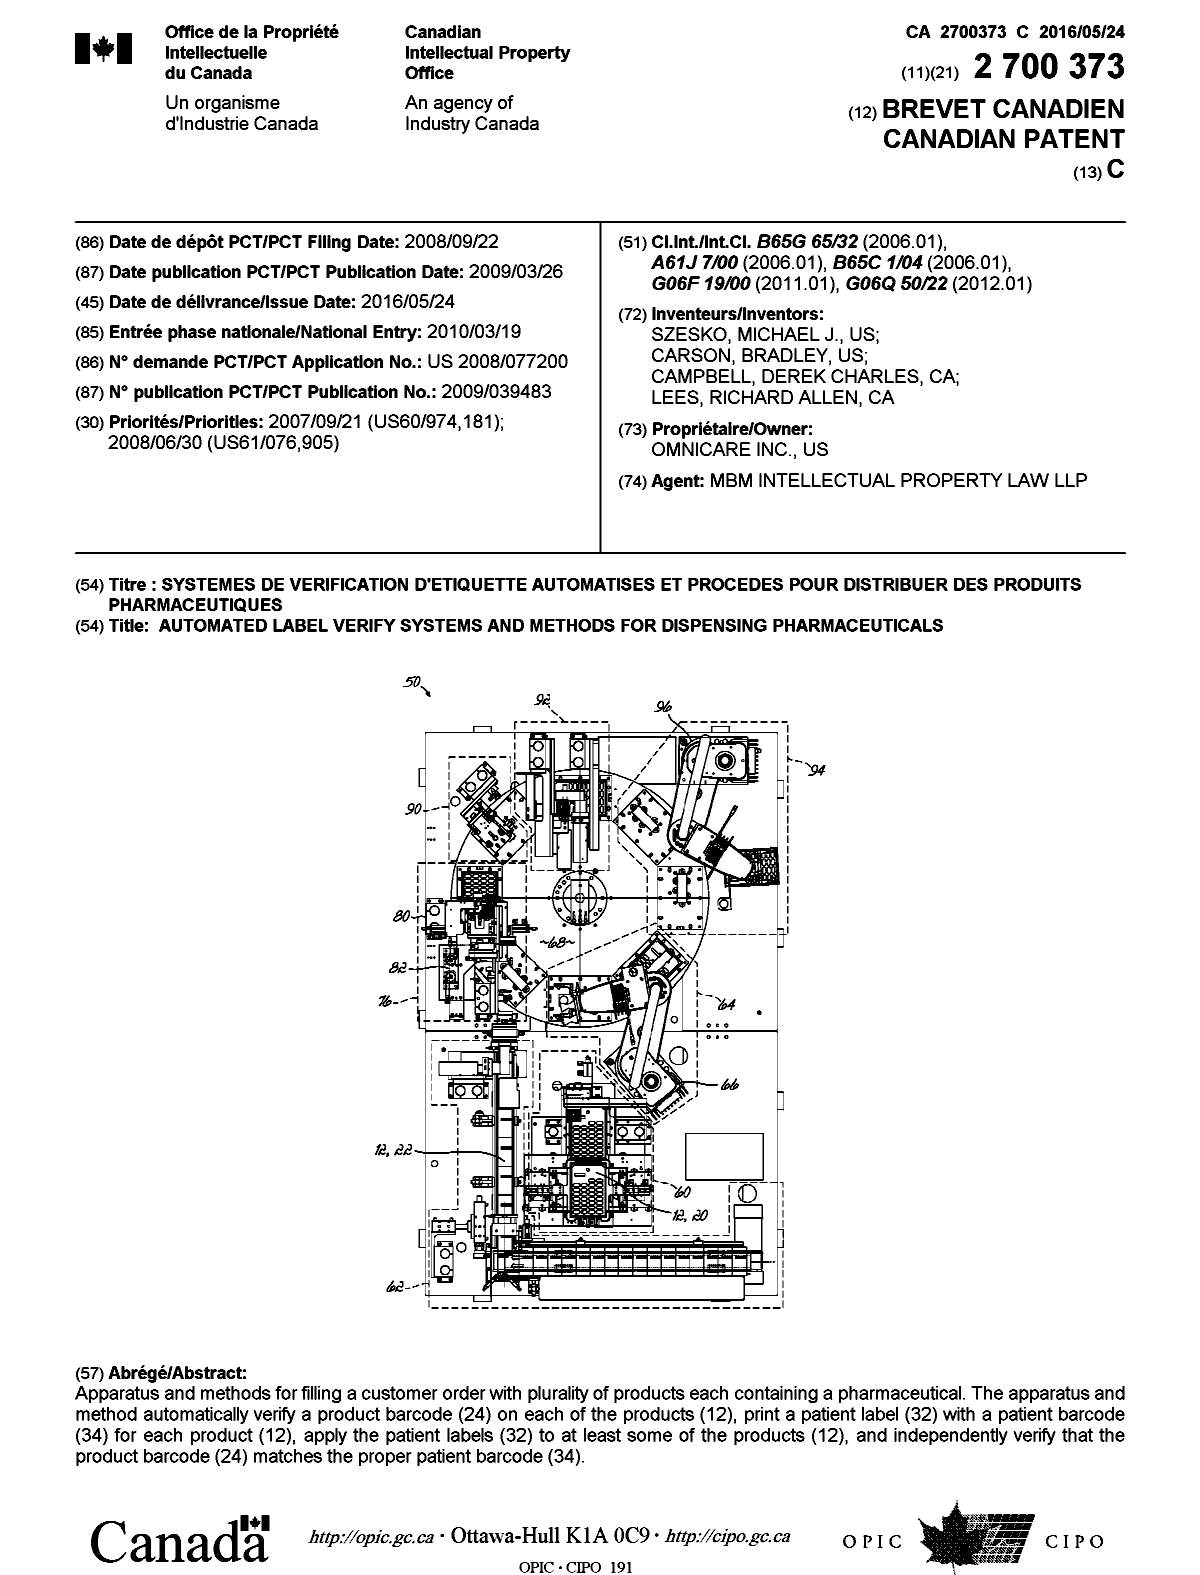 Document de brevet canadien 2700373. Page couverture 20160405. Image 1 de 1